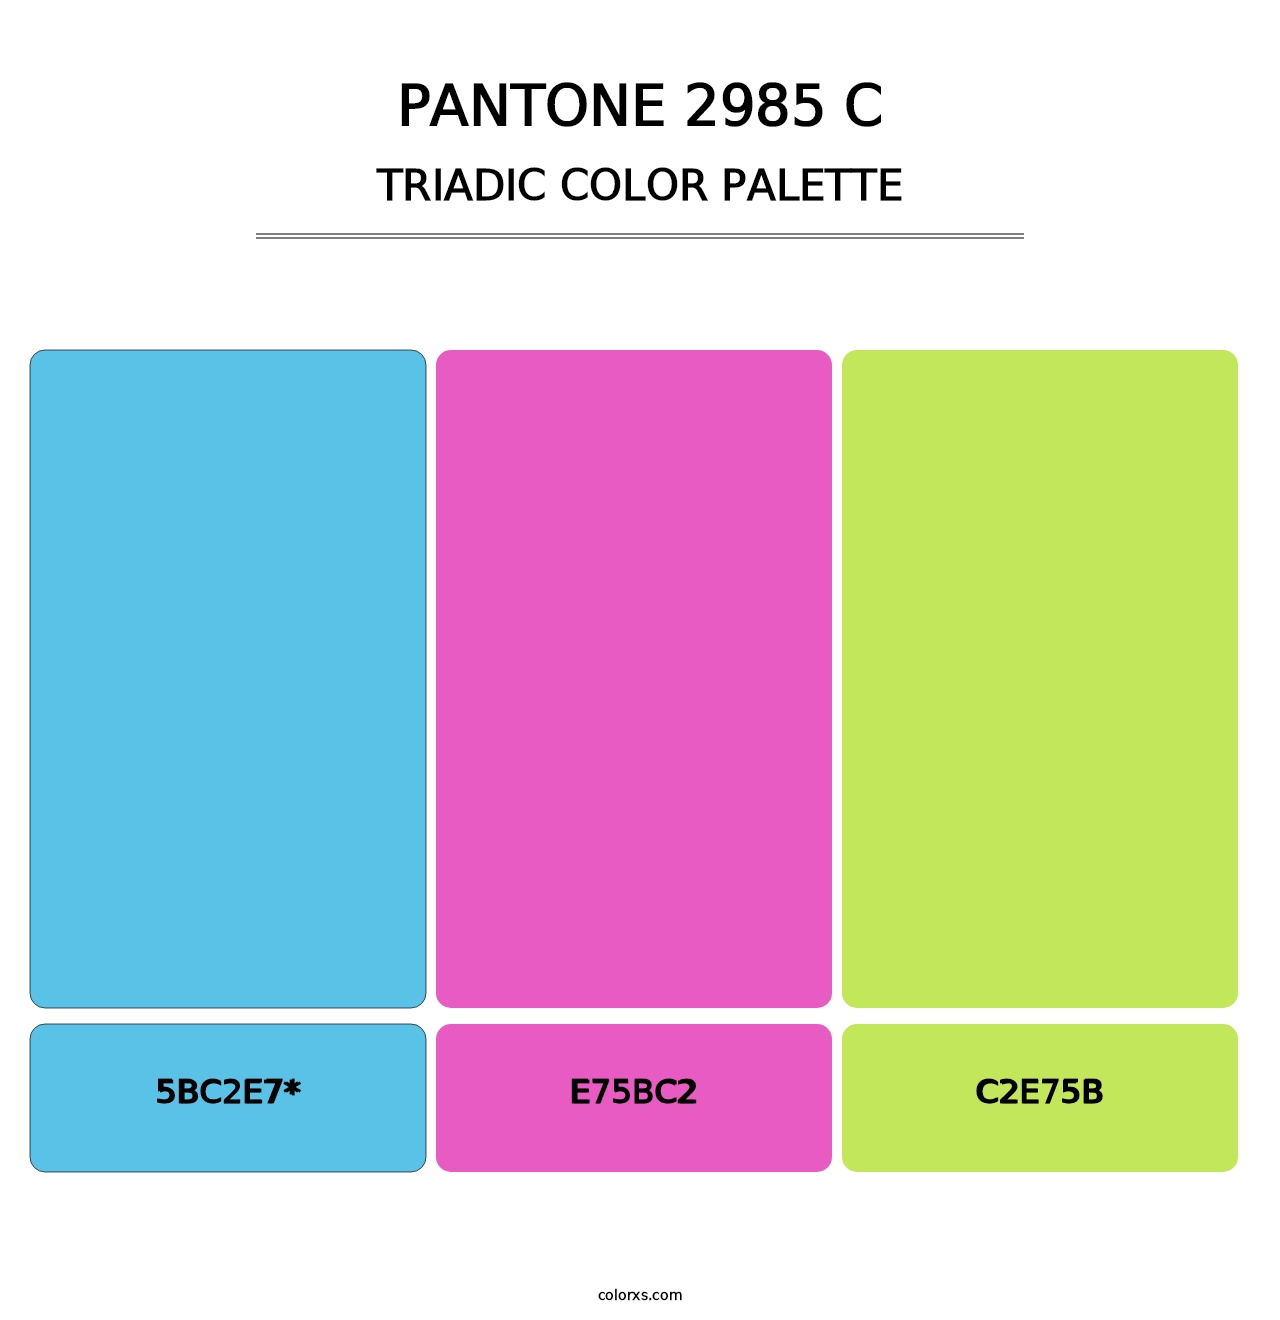 PANTONE 2985 C - Triadic Color Palette